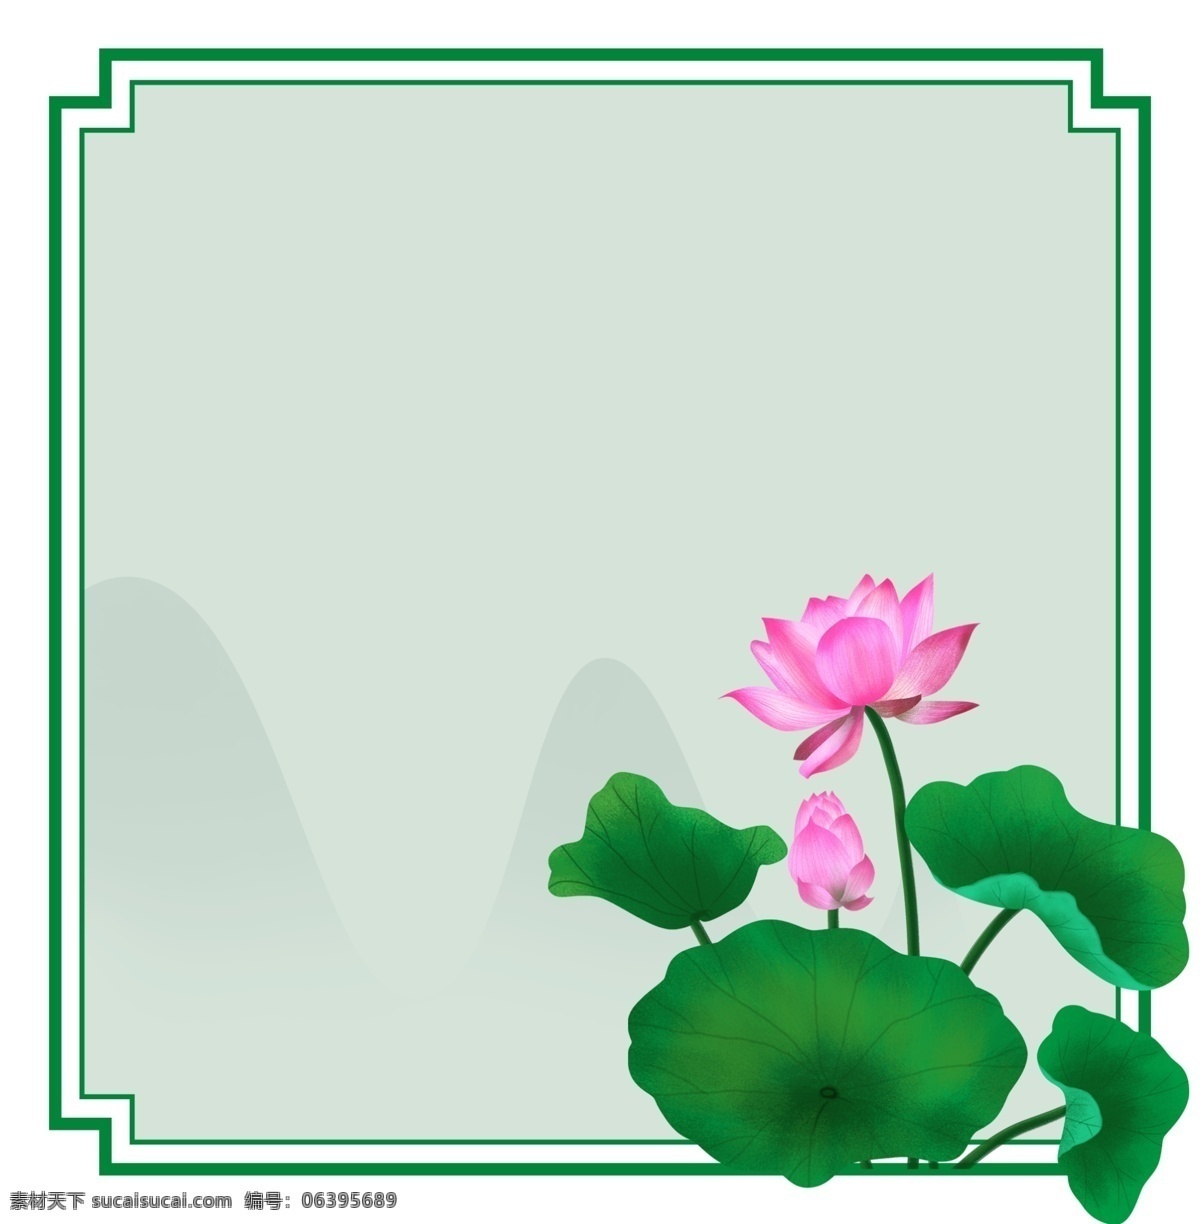 荷花 中式 主题 边框 主题边框 立夏 夏天 植物 夏天植物 花草 莲花 荷叶 叶子 绿色植物 中国风 绿色边框